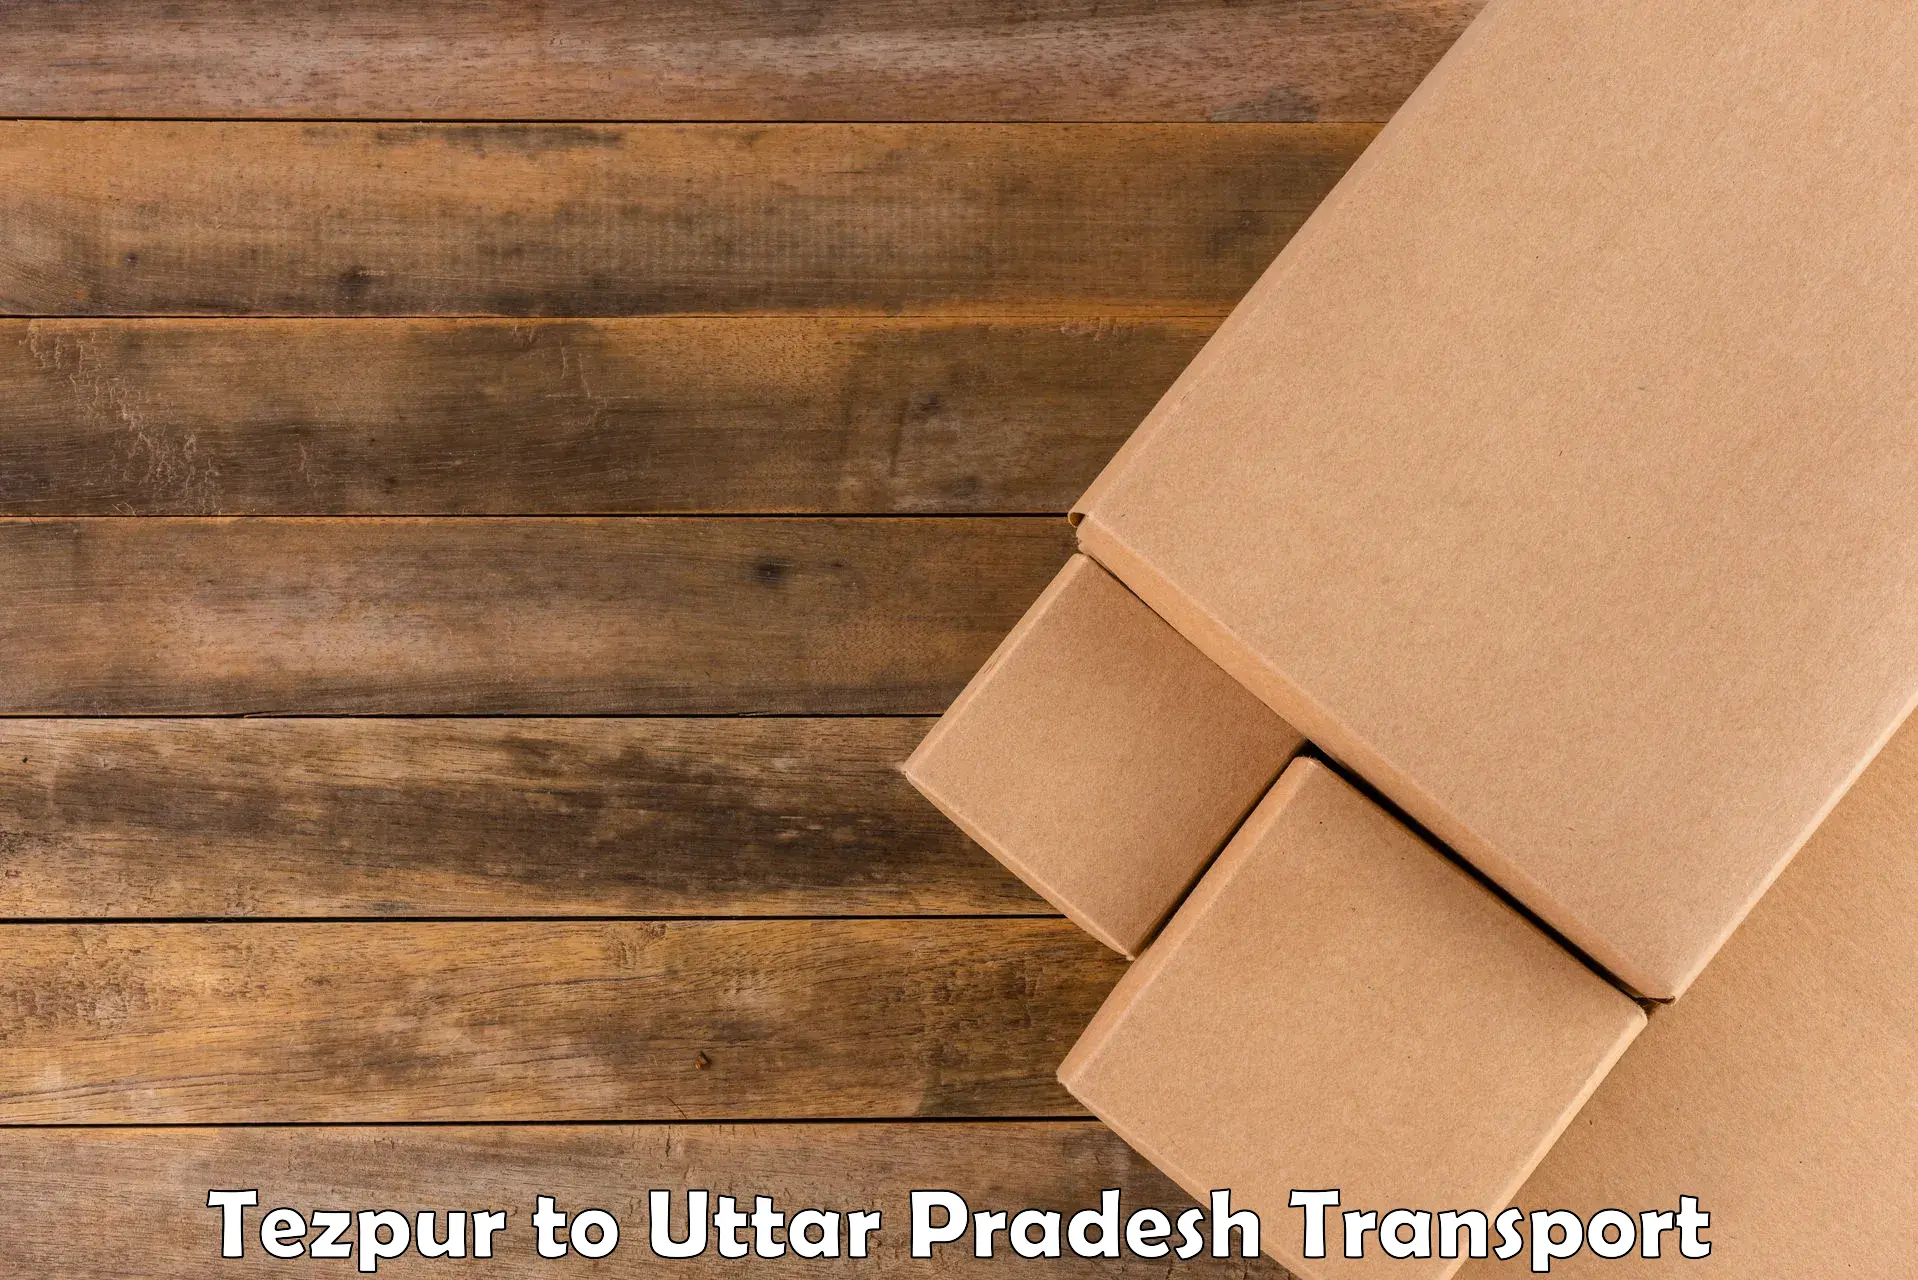 Shipping services Tezpur to Varanasi